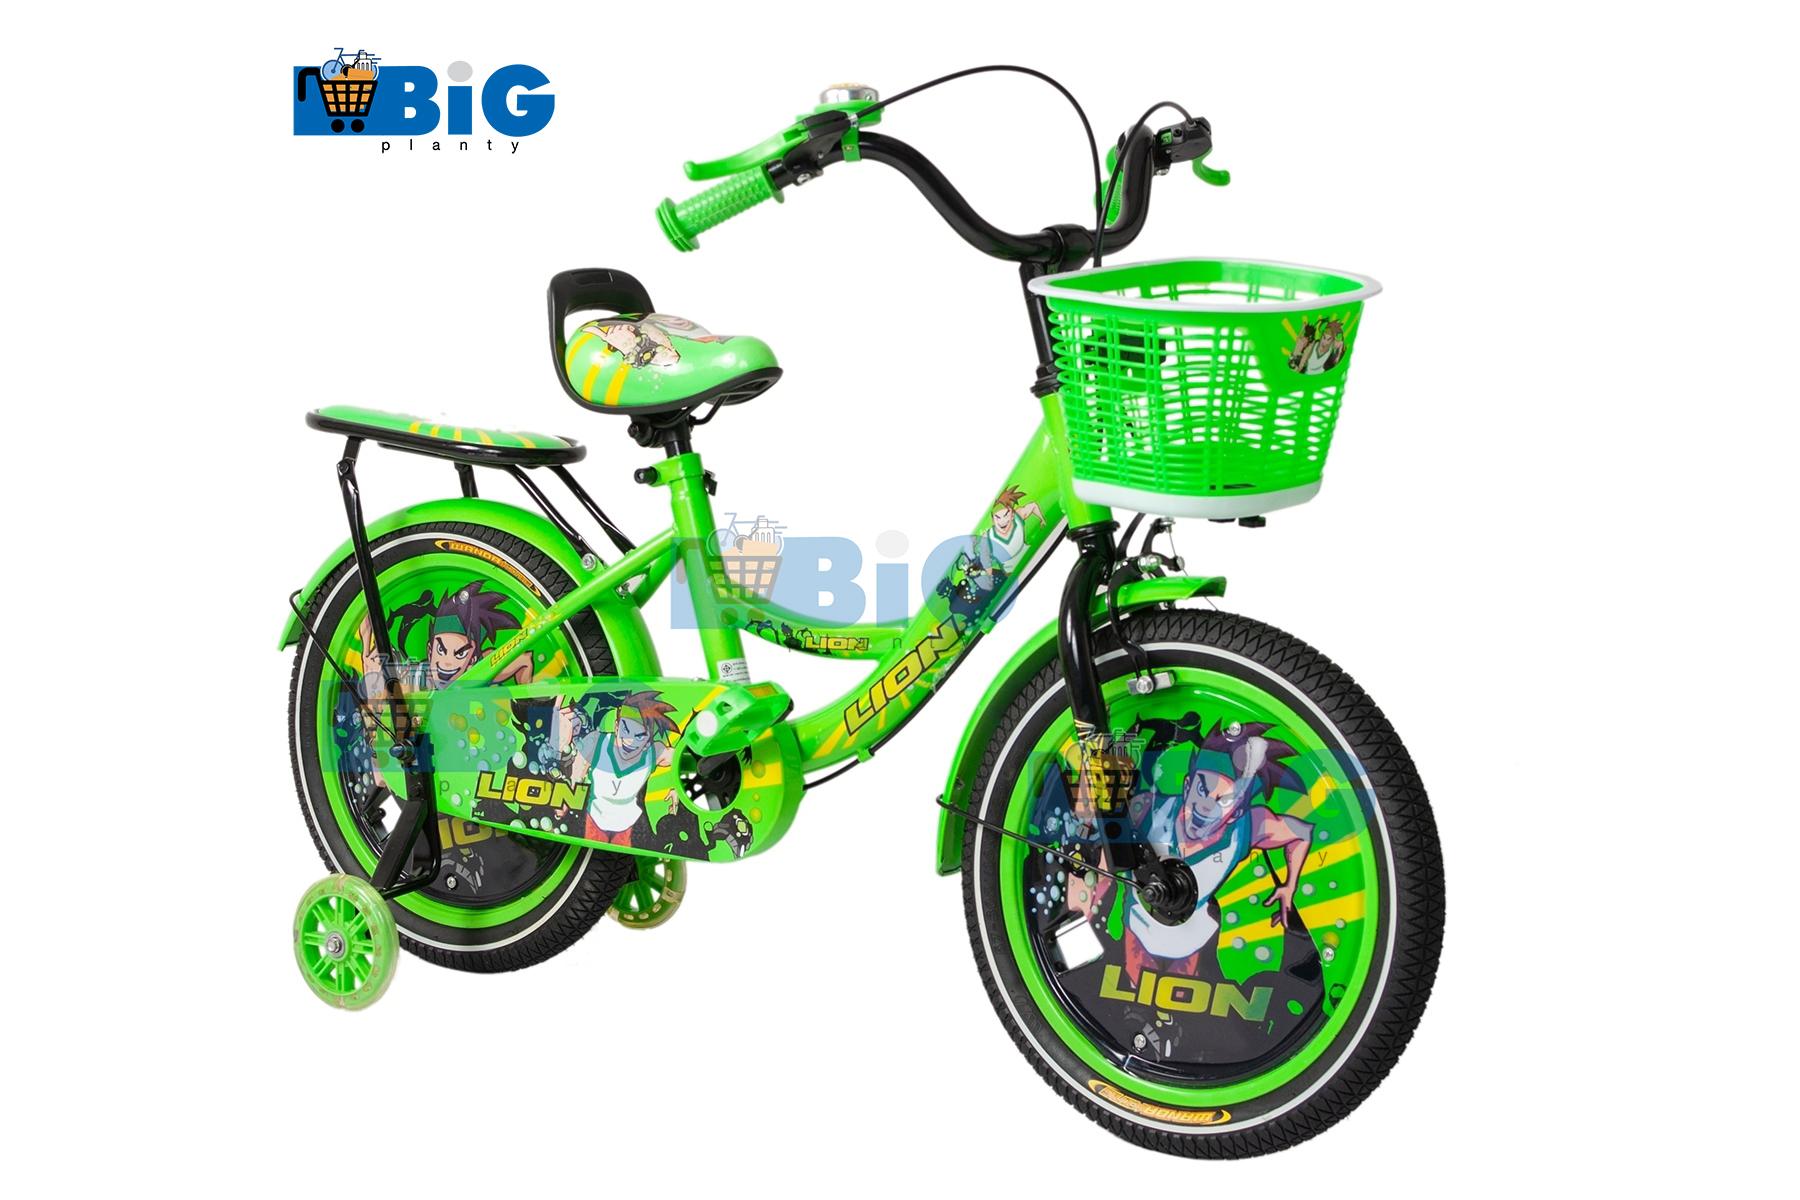 BigPlantyจักรยานเด็กเบนโทน 16 นิ้ว สีเขียว No.7777